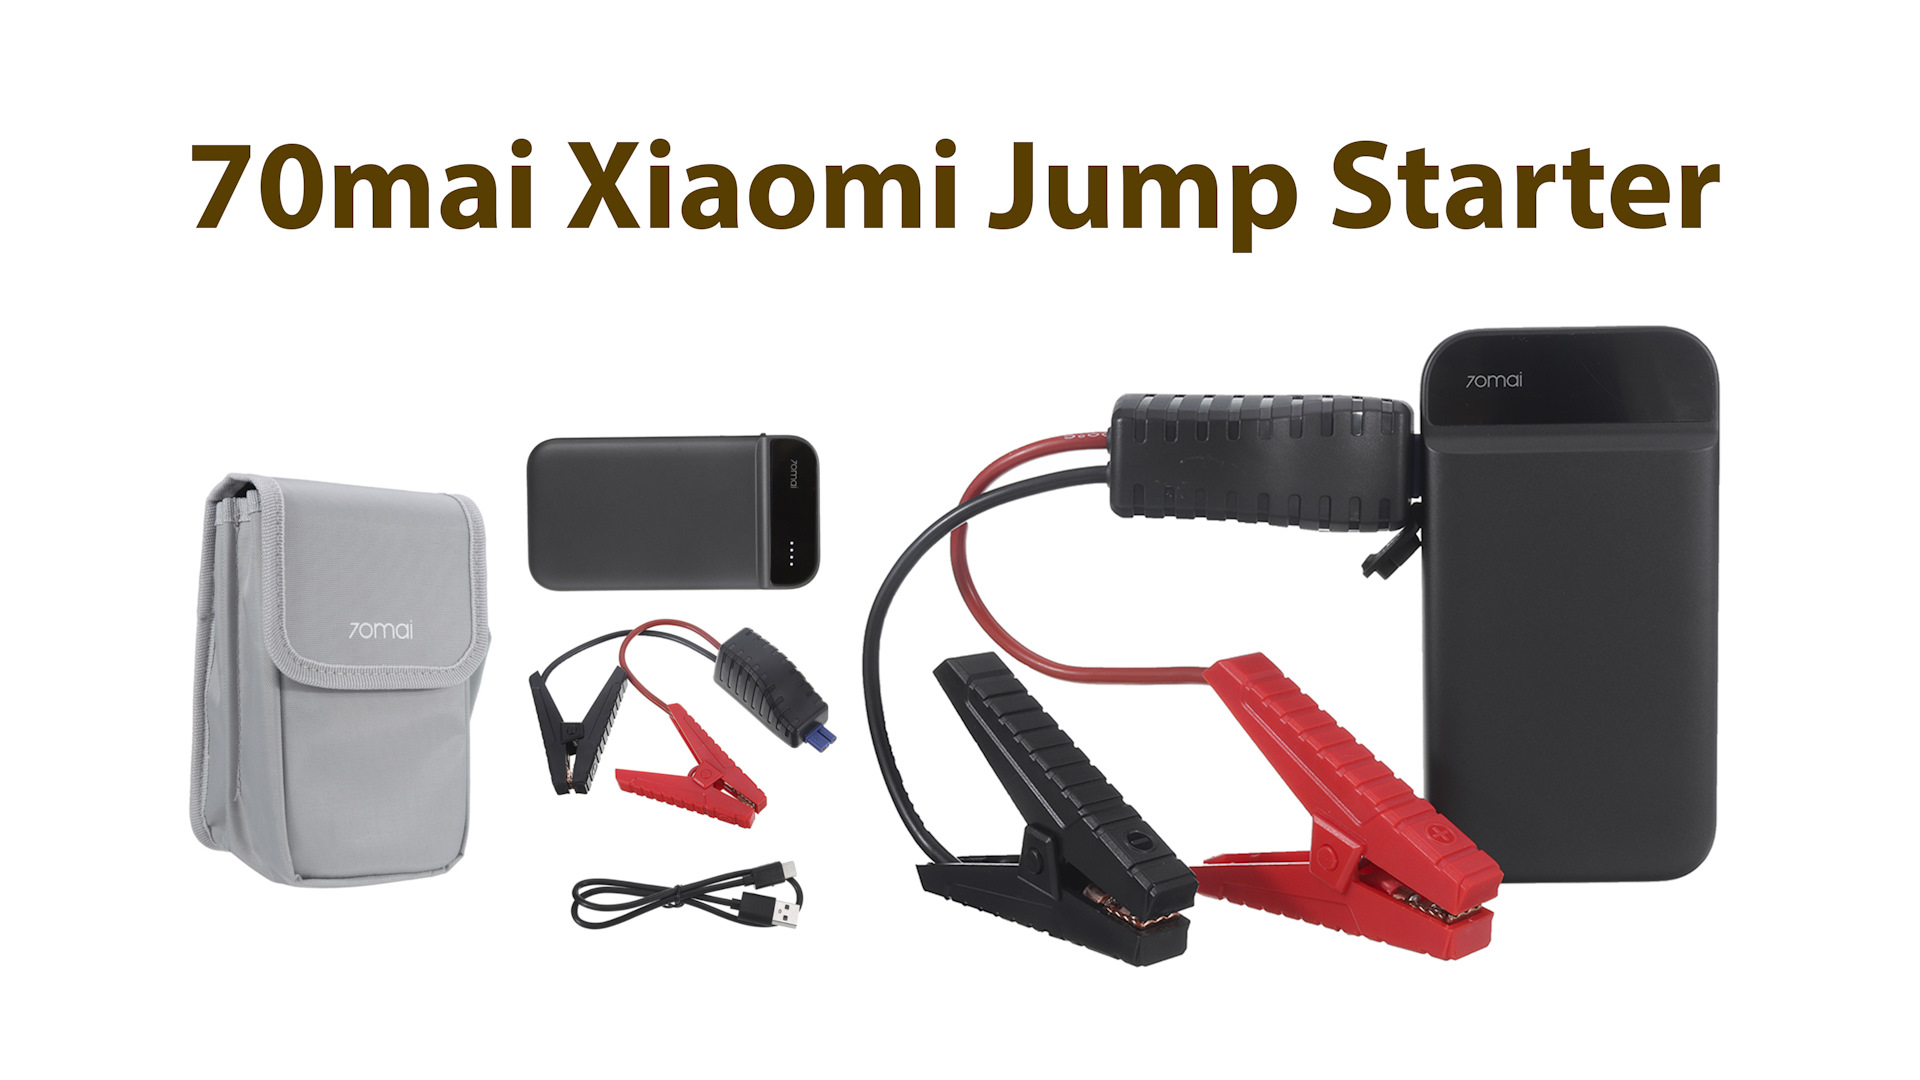 70 jump starter. Пусковое зарядное устройство Xiaomi 70mai Jump Starter. Xiaomi 70mai Jump Starter Max. Пуско-зарядное устройство Xiaomi 70mai Jump Starter Max. 70 Mai Jump Starter 11000mah.